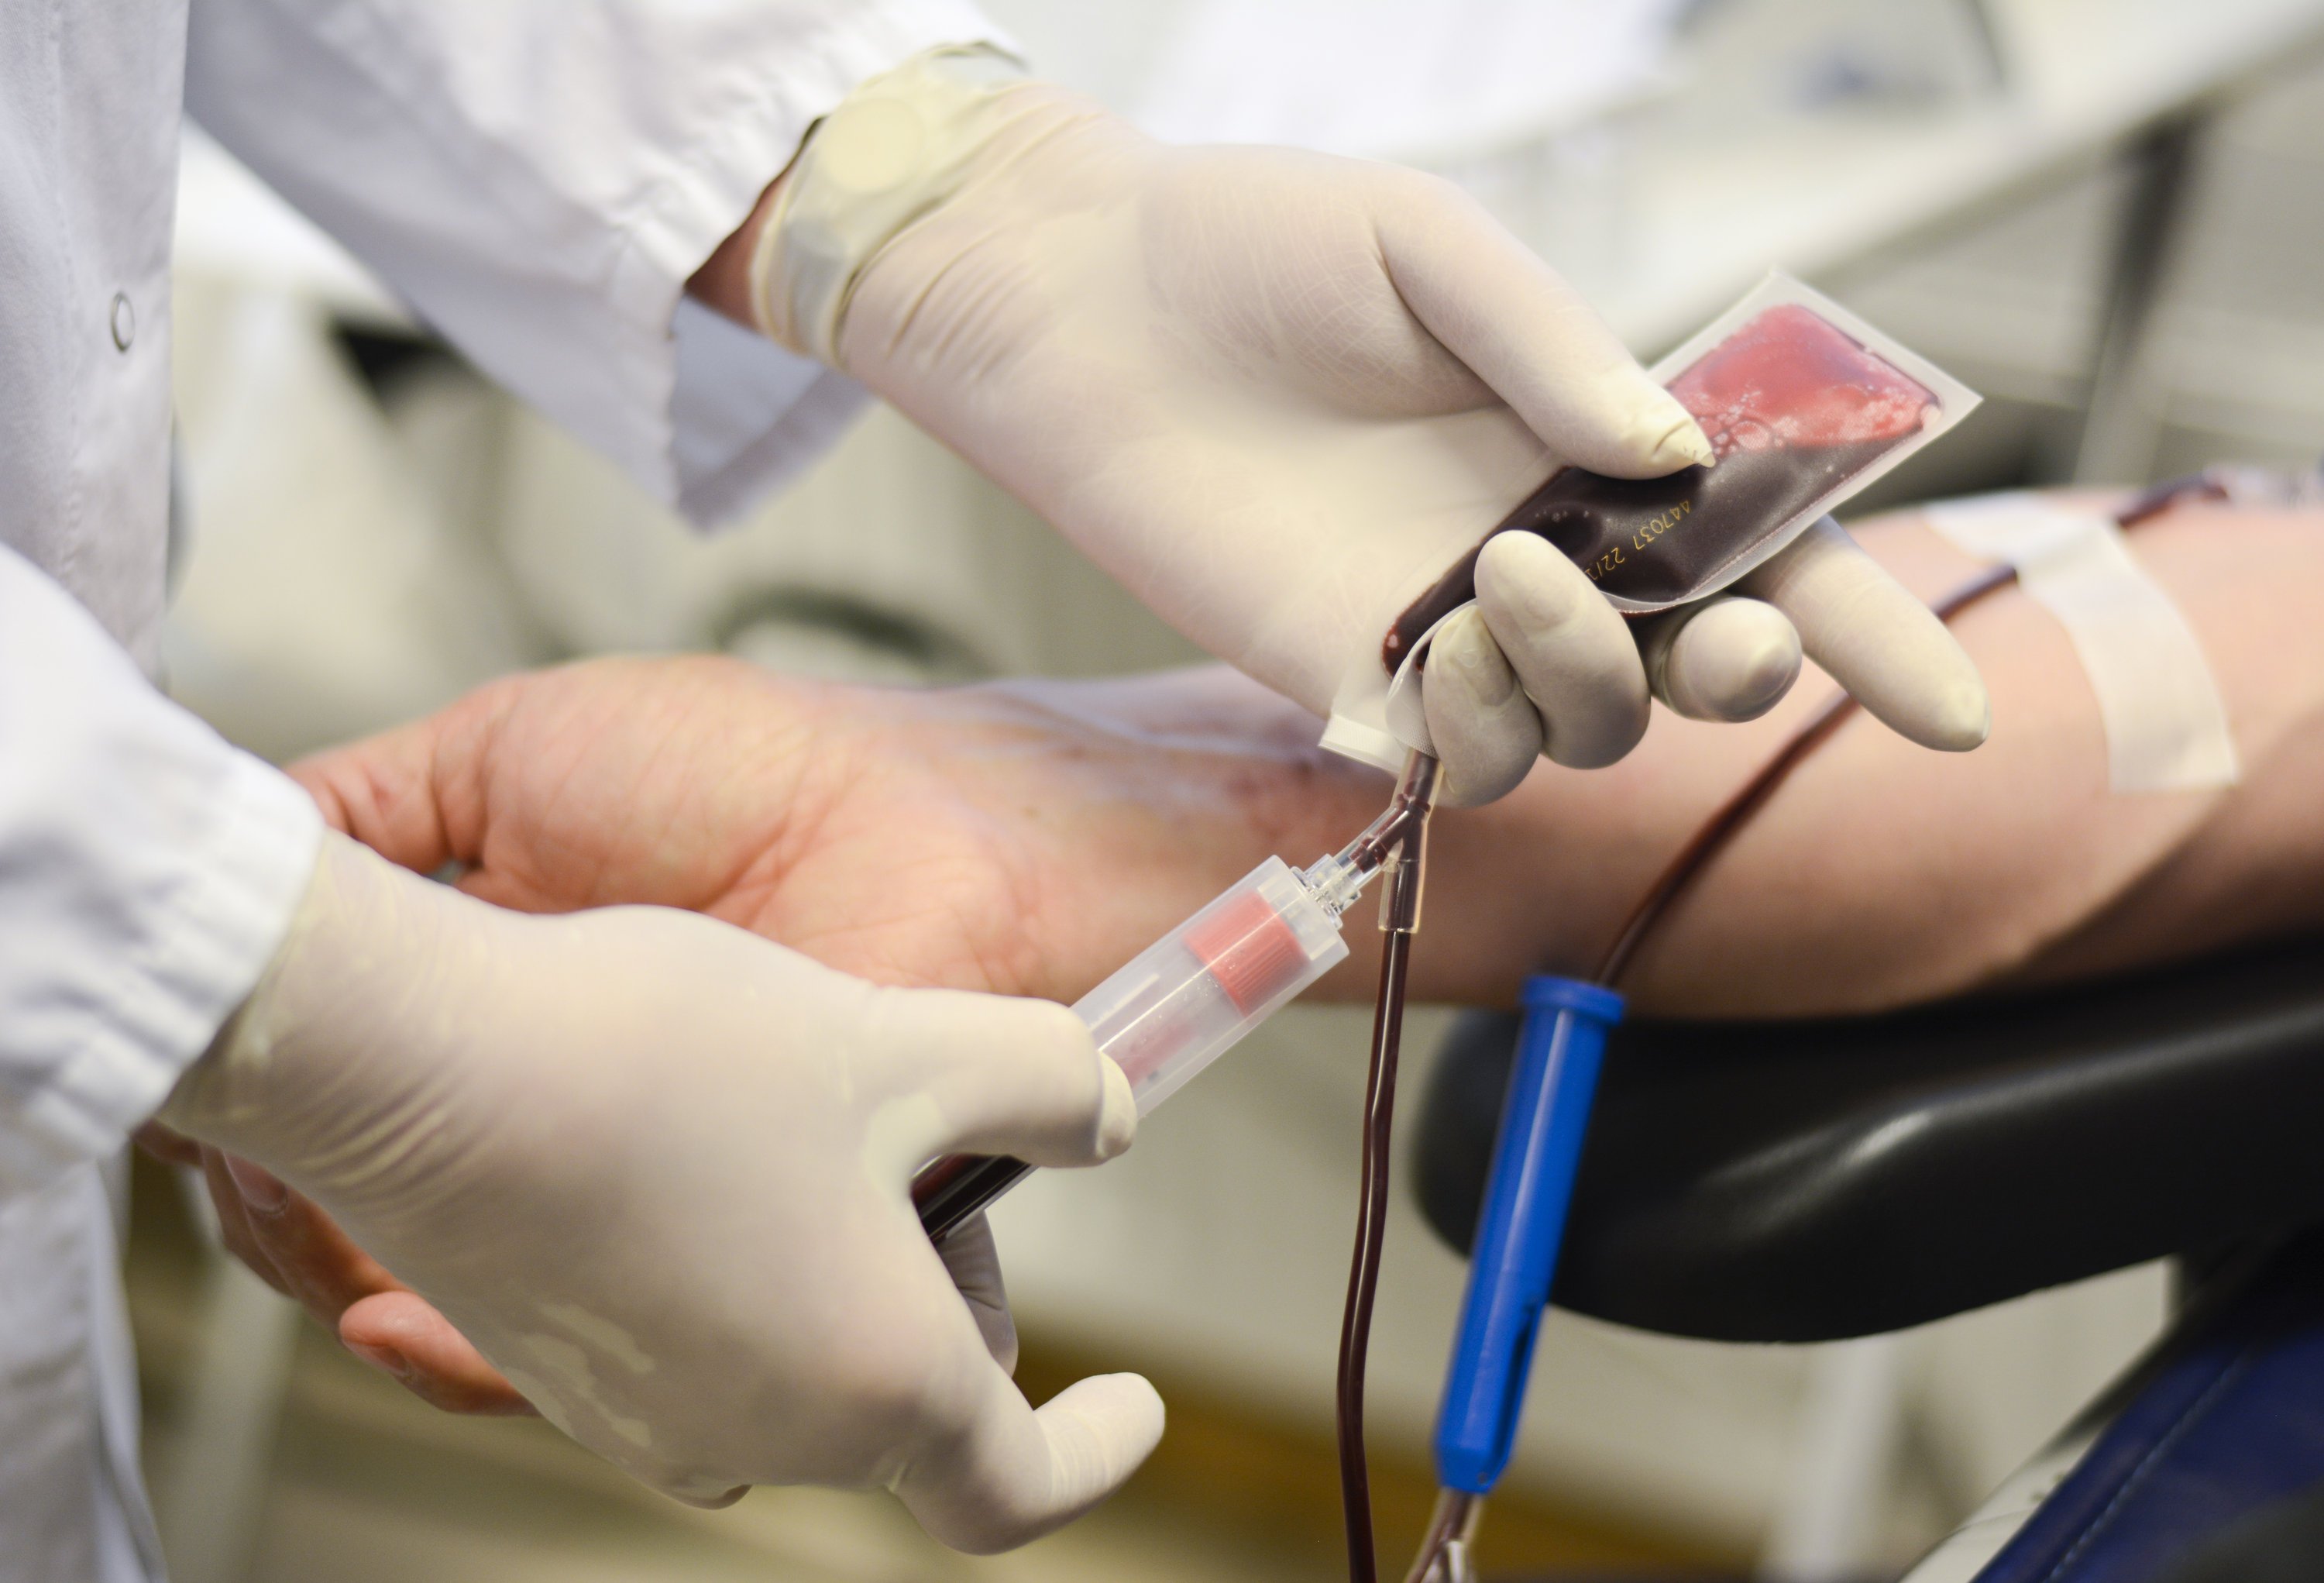 Blutspende: Das Deutsche Rote Kreuz organisiert in Deutschland jährlich 43.000 Blutspendetermine. Alternativ zu Spenderblut wird es vielleicht bald künstlich hergestelltes Blut geben. Forscher in Großbritannien wollen dazu im Jahr 2017 mit einer klinischen Studie beginnen. 